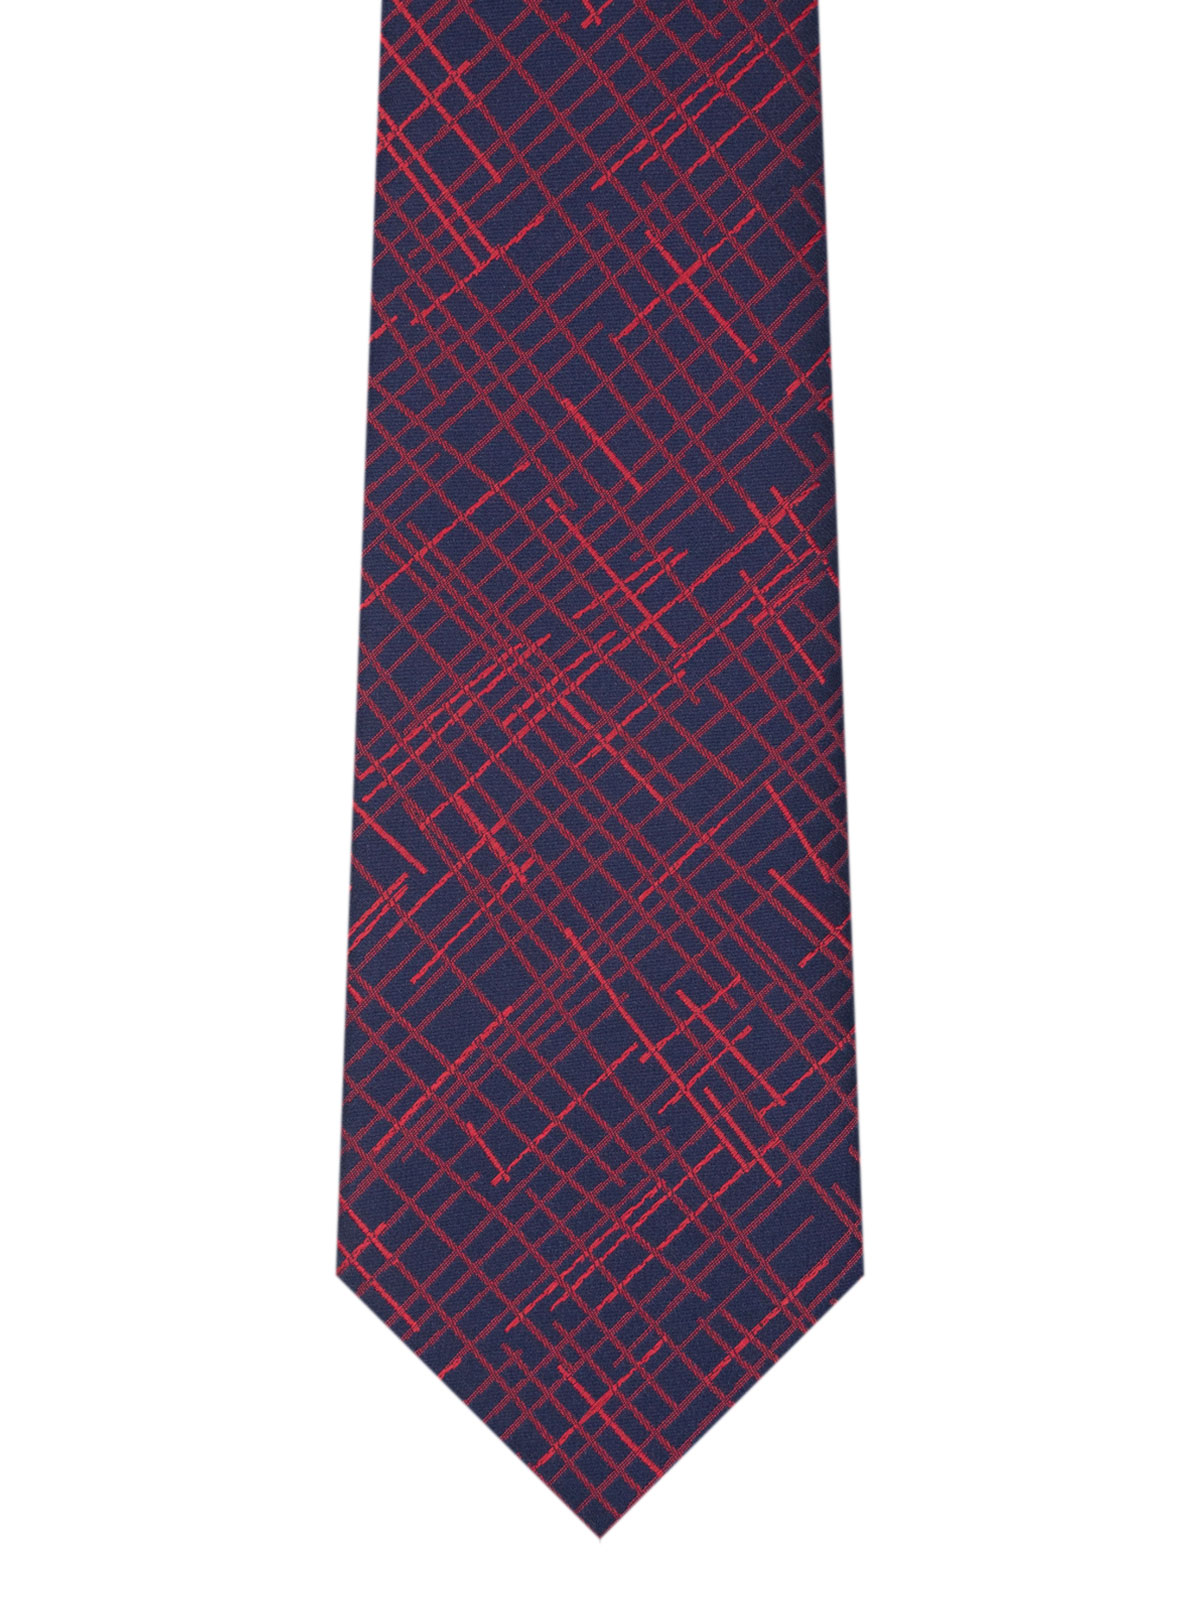 Cravată albastru închis cu linii roșii - 10186 - € 14.06 img2